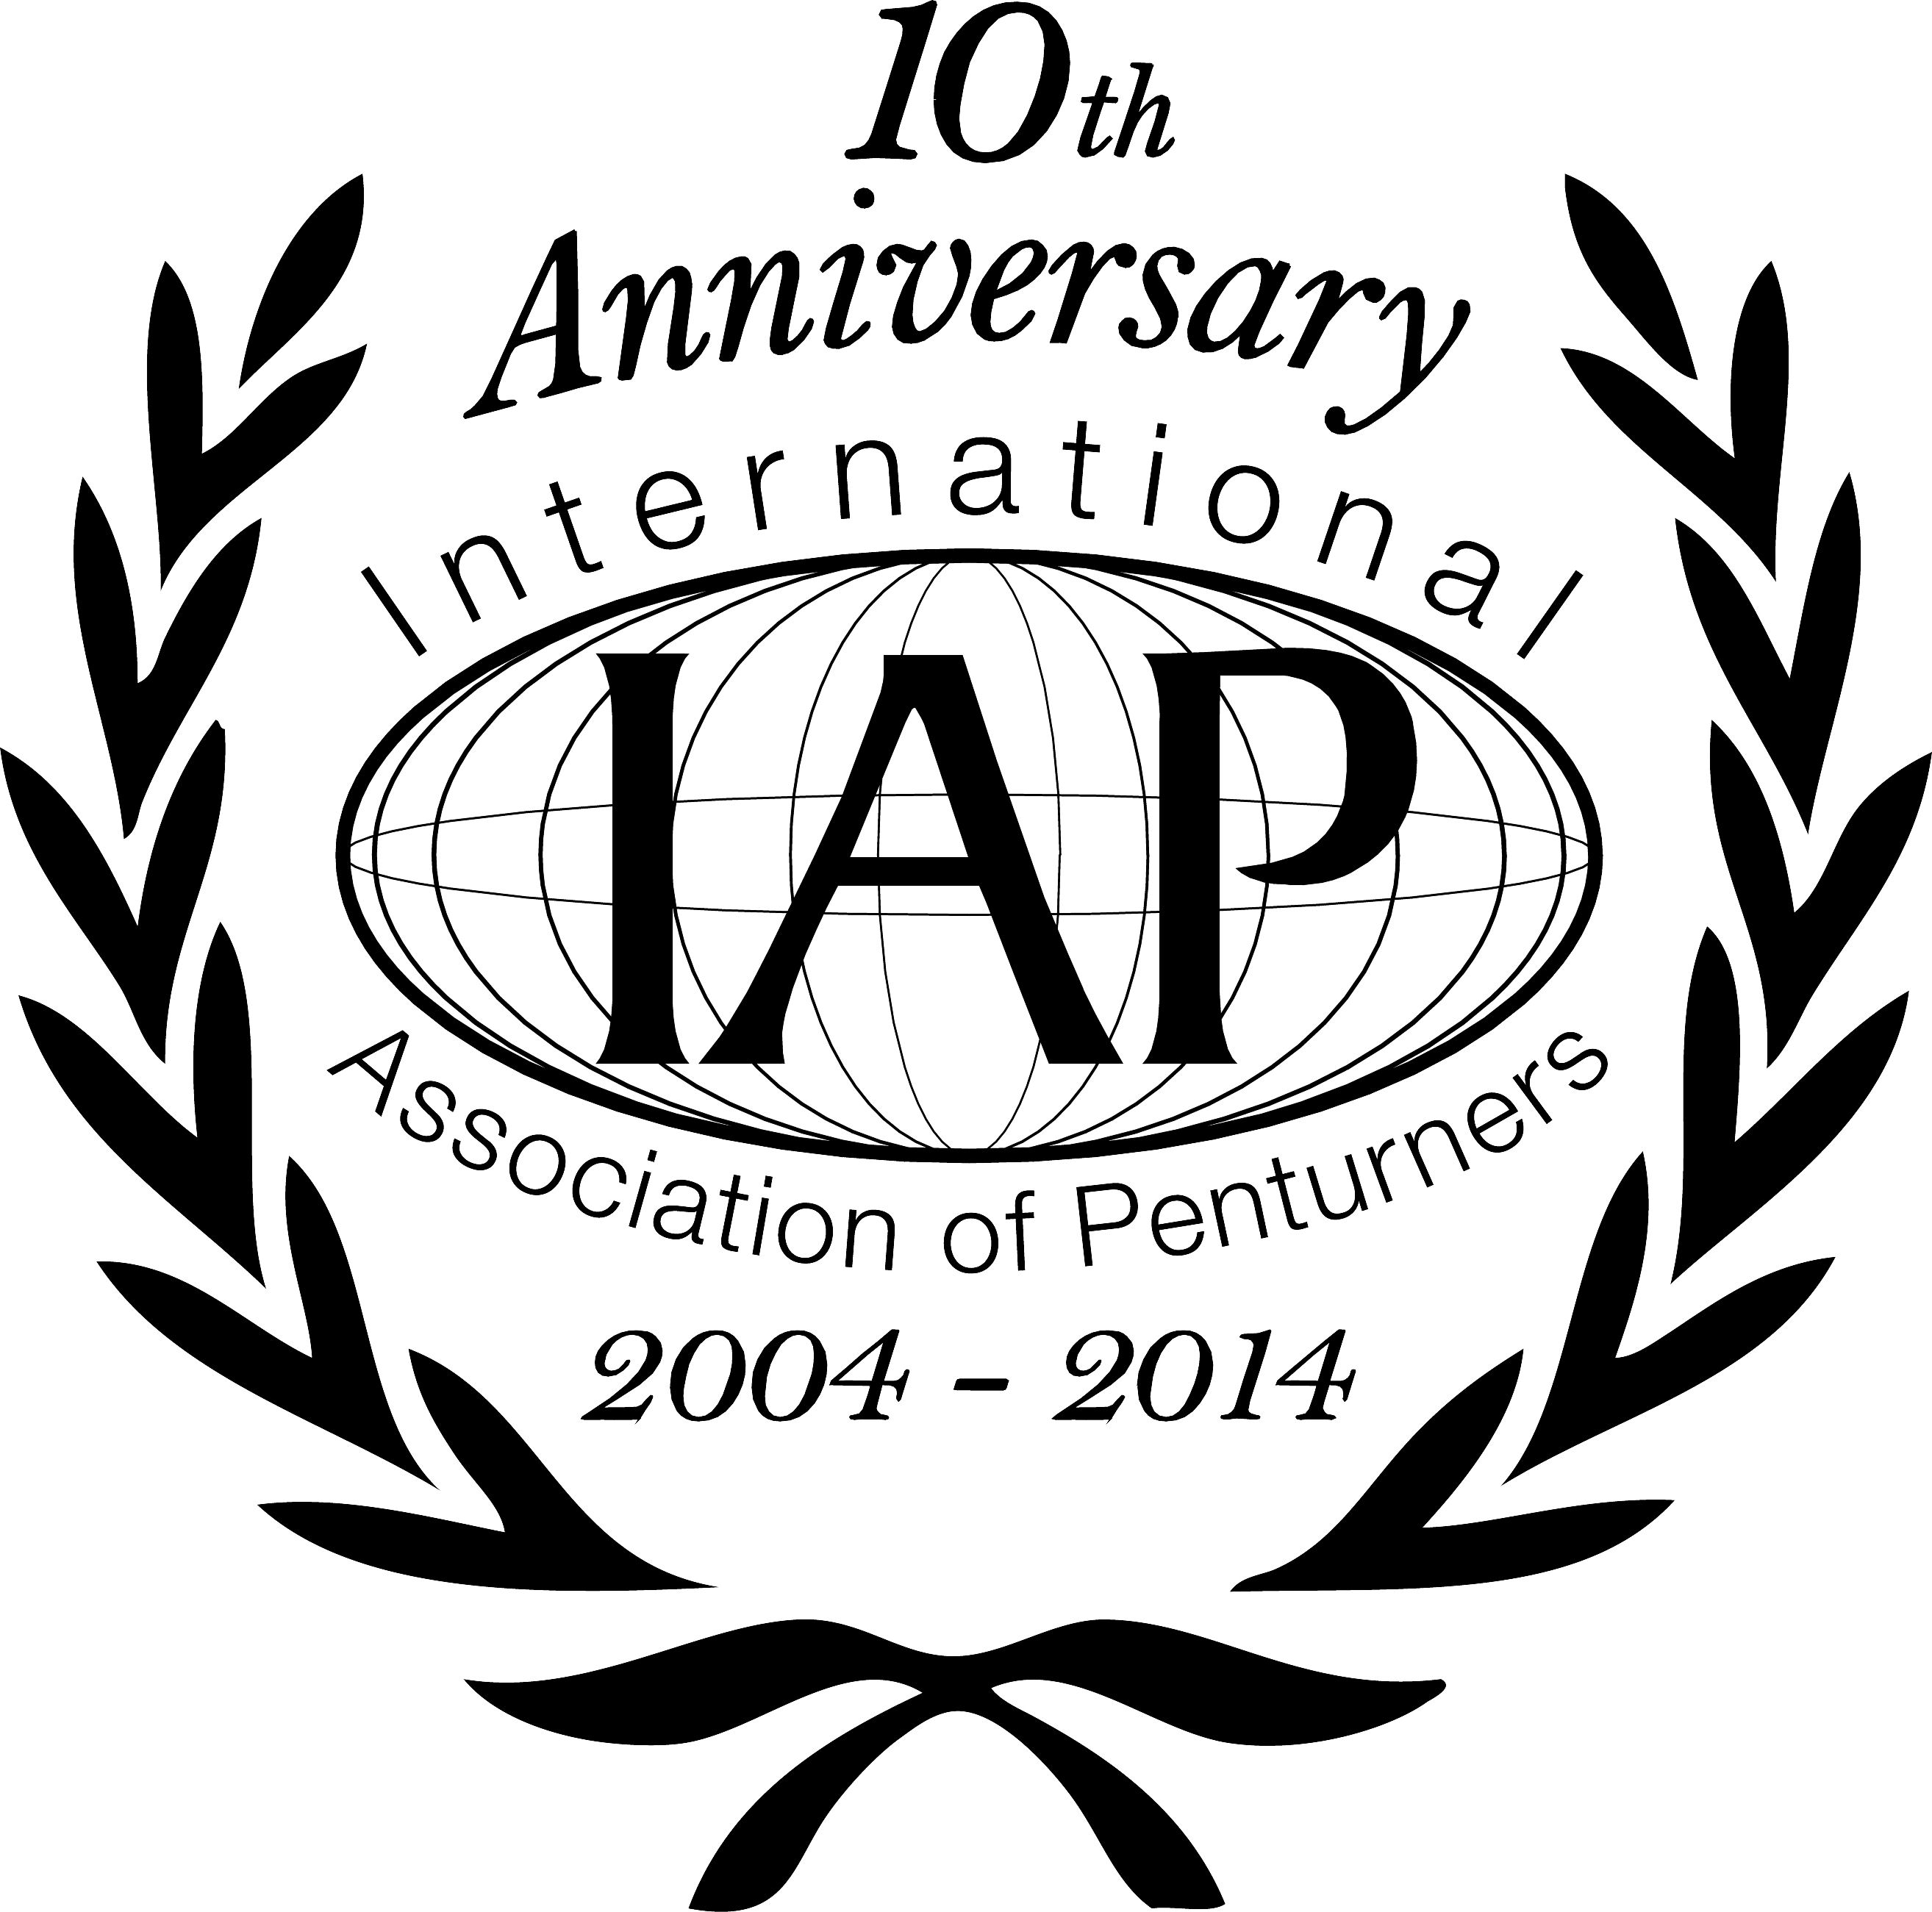 IAP-Logo-10.jpg